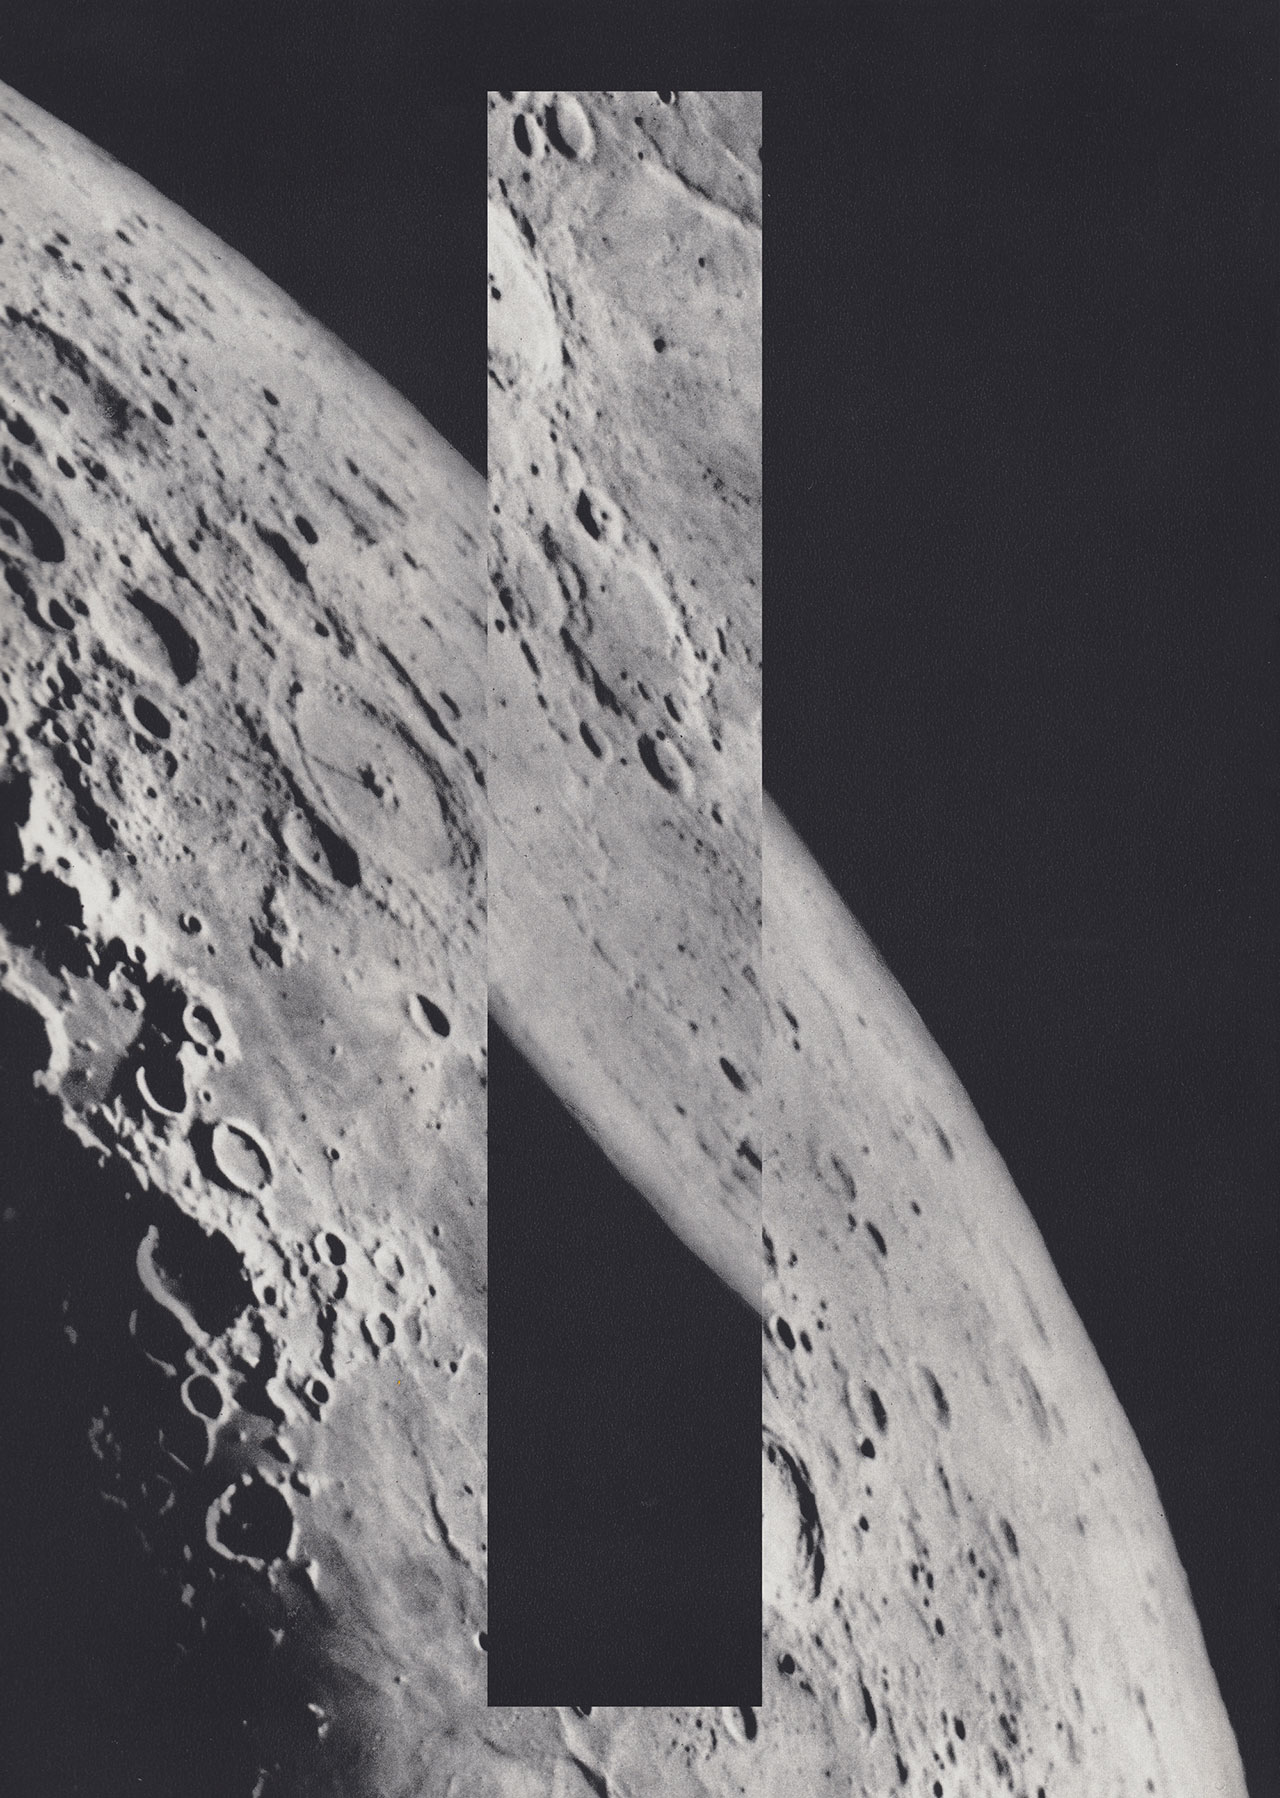 Moons series
Isolation#1
35x50cm
© Luis Dourado.